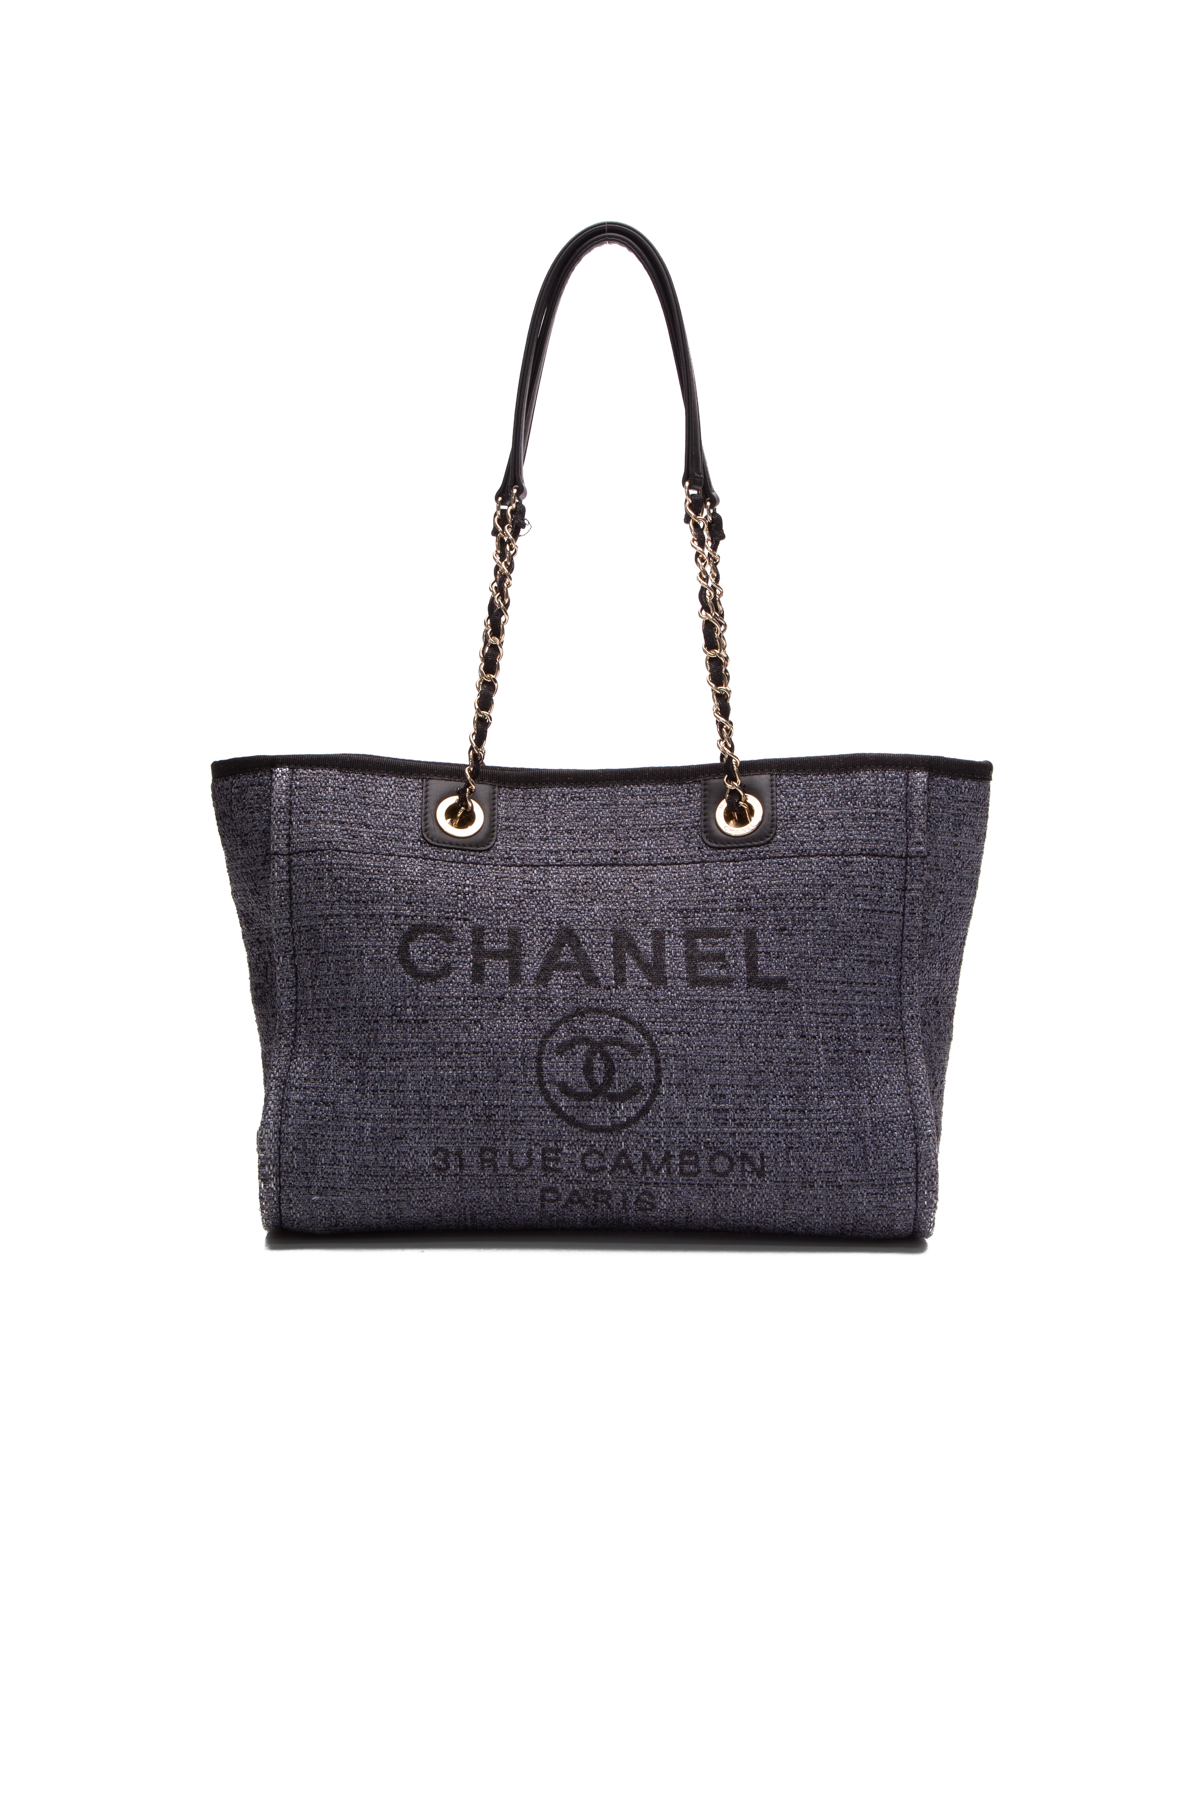 Authentic Chanel Deauville Dark Blue Denim Large Shopping Tote Bag – Paris  Station Shop